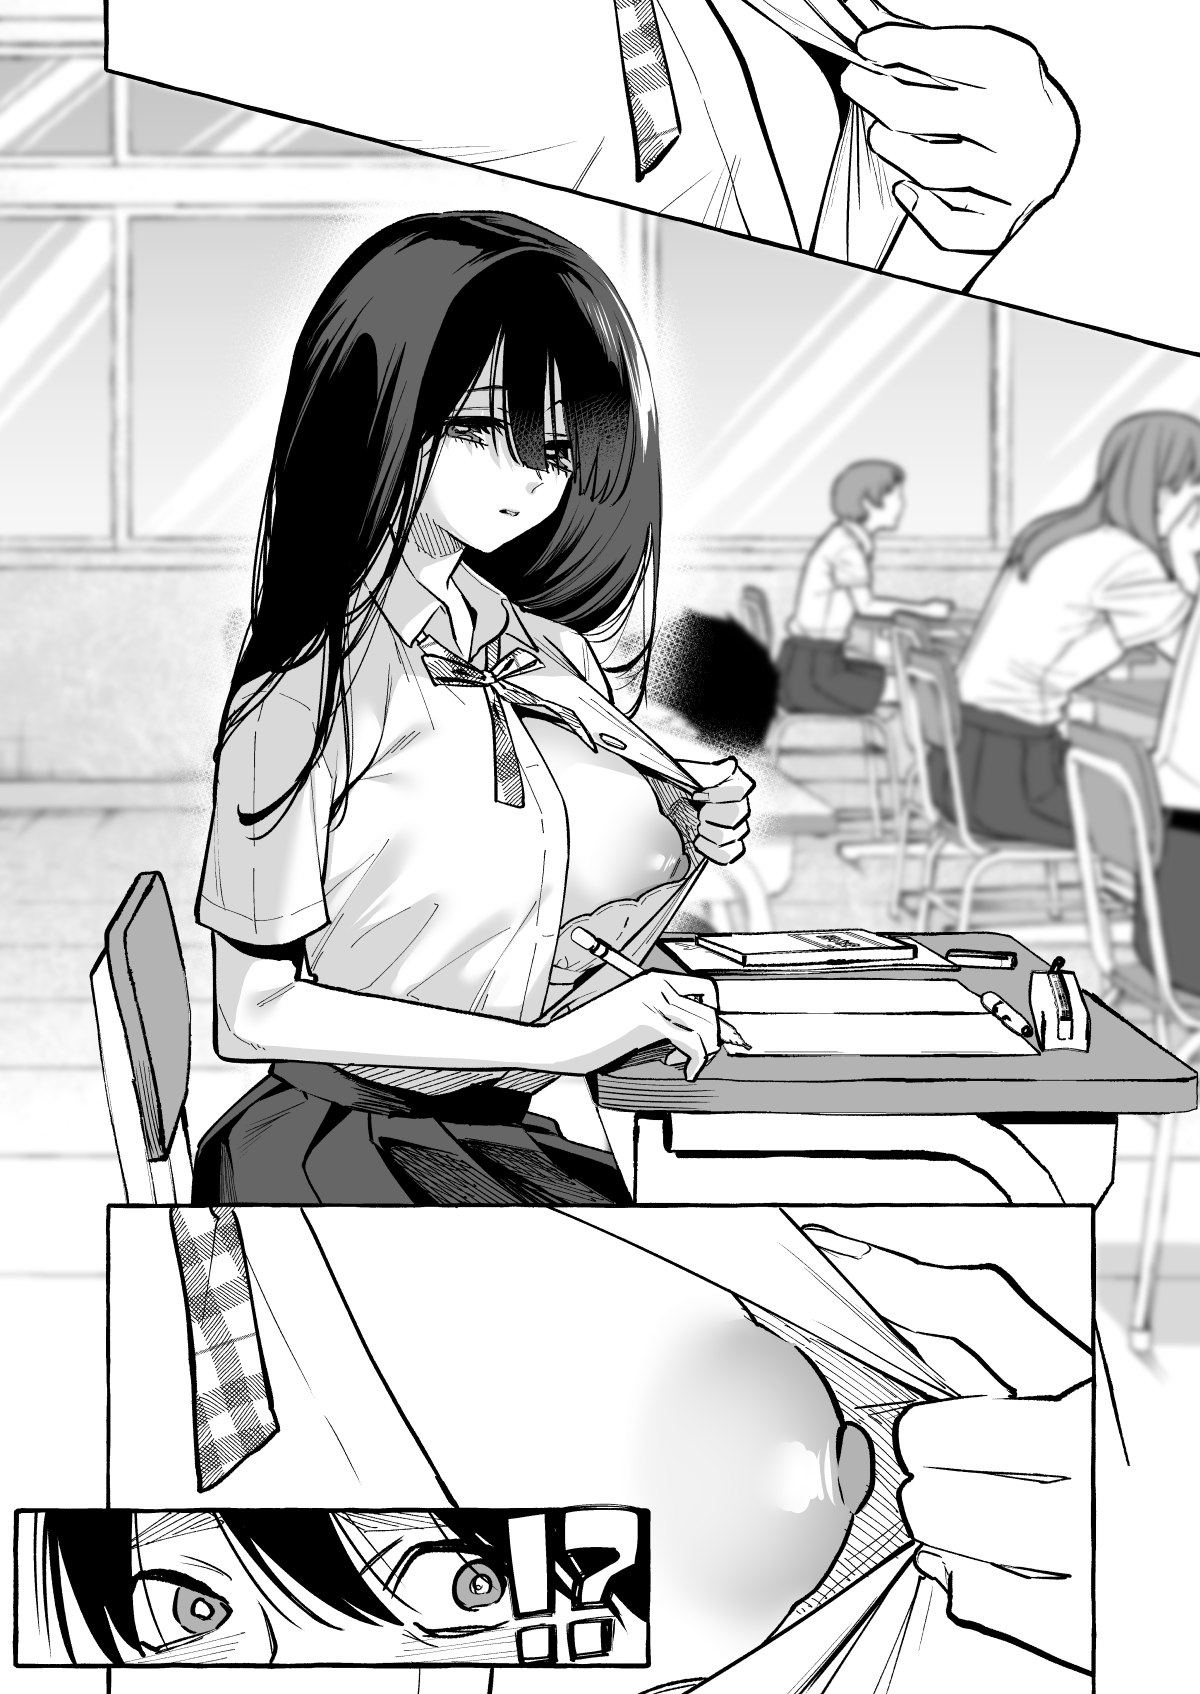 隣の席の間宮さん-4 【エロ漫画JK】隣の席の女の子が授業中におっぱいを見せつけてくるんですけどwww